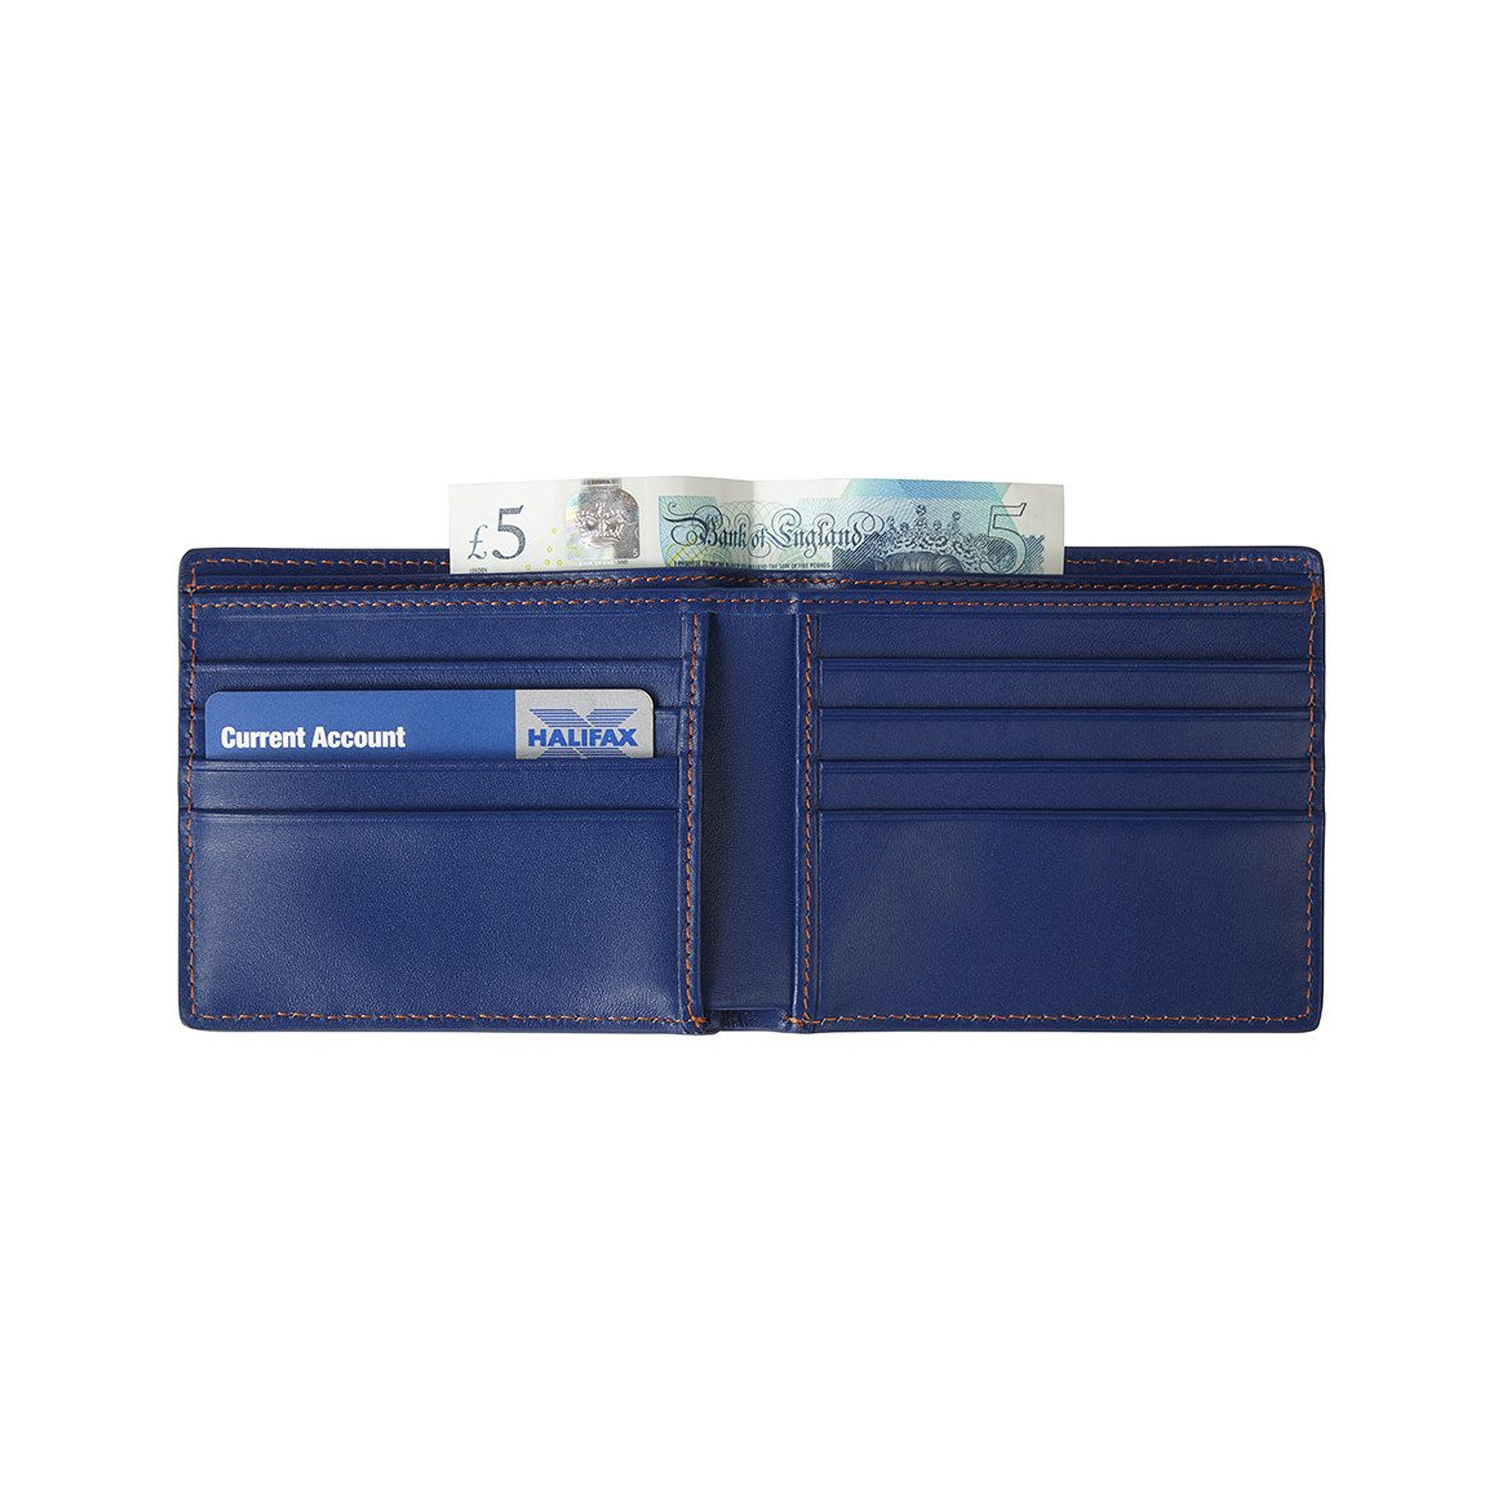 Portefeuille cuir GULF bleu vue intérieure ouverte avec des compartiments cartes